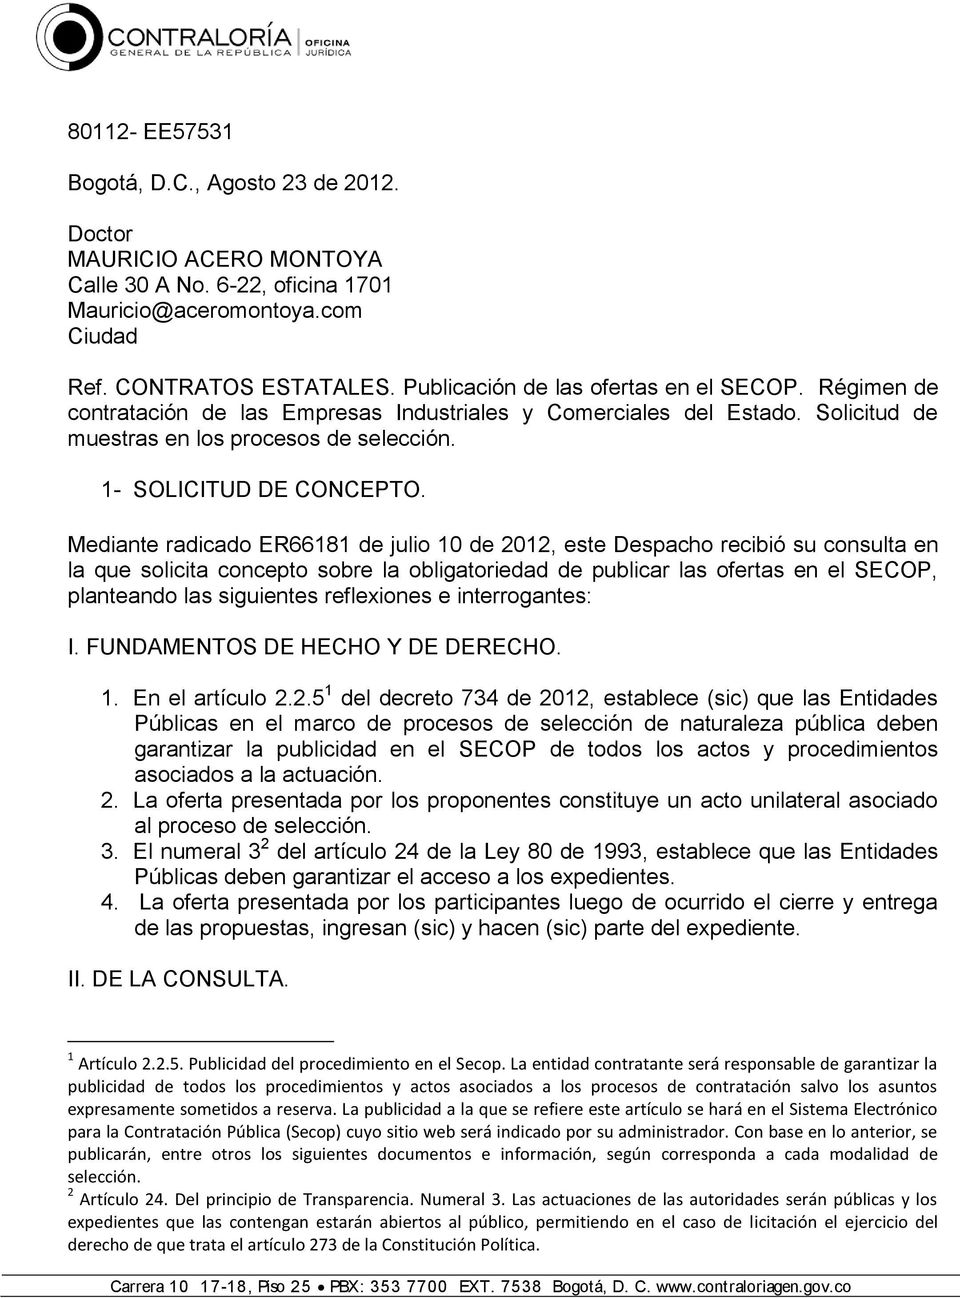 Mediante radicado ER66181 de julio 10 de 2012, este Despacho recibió su consulta en la que solicita concepto sobre la obligatoriedad de publicar las ofertas en el SECOP, planteando las siguientes